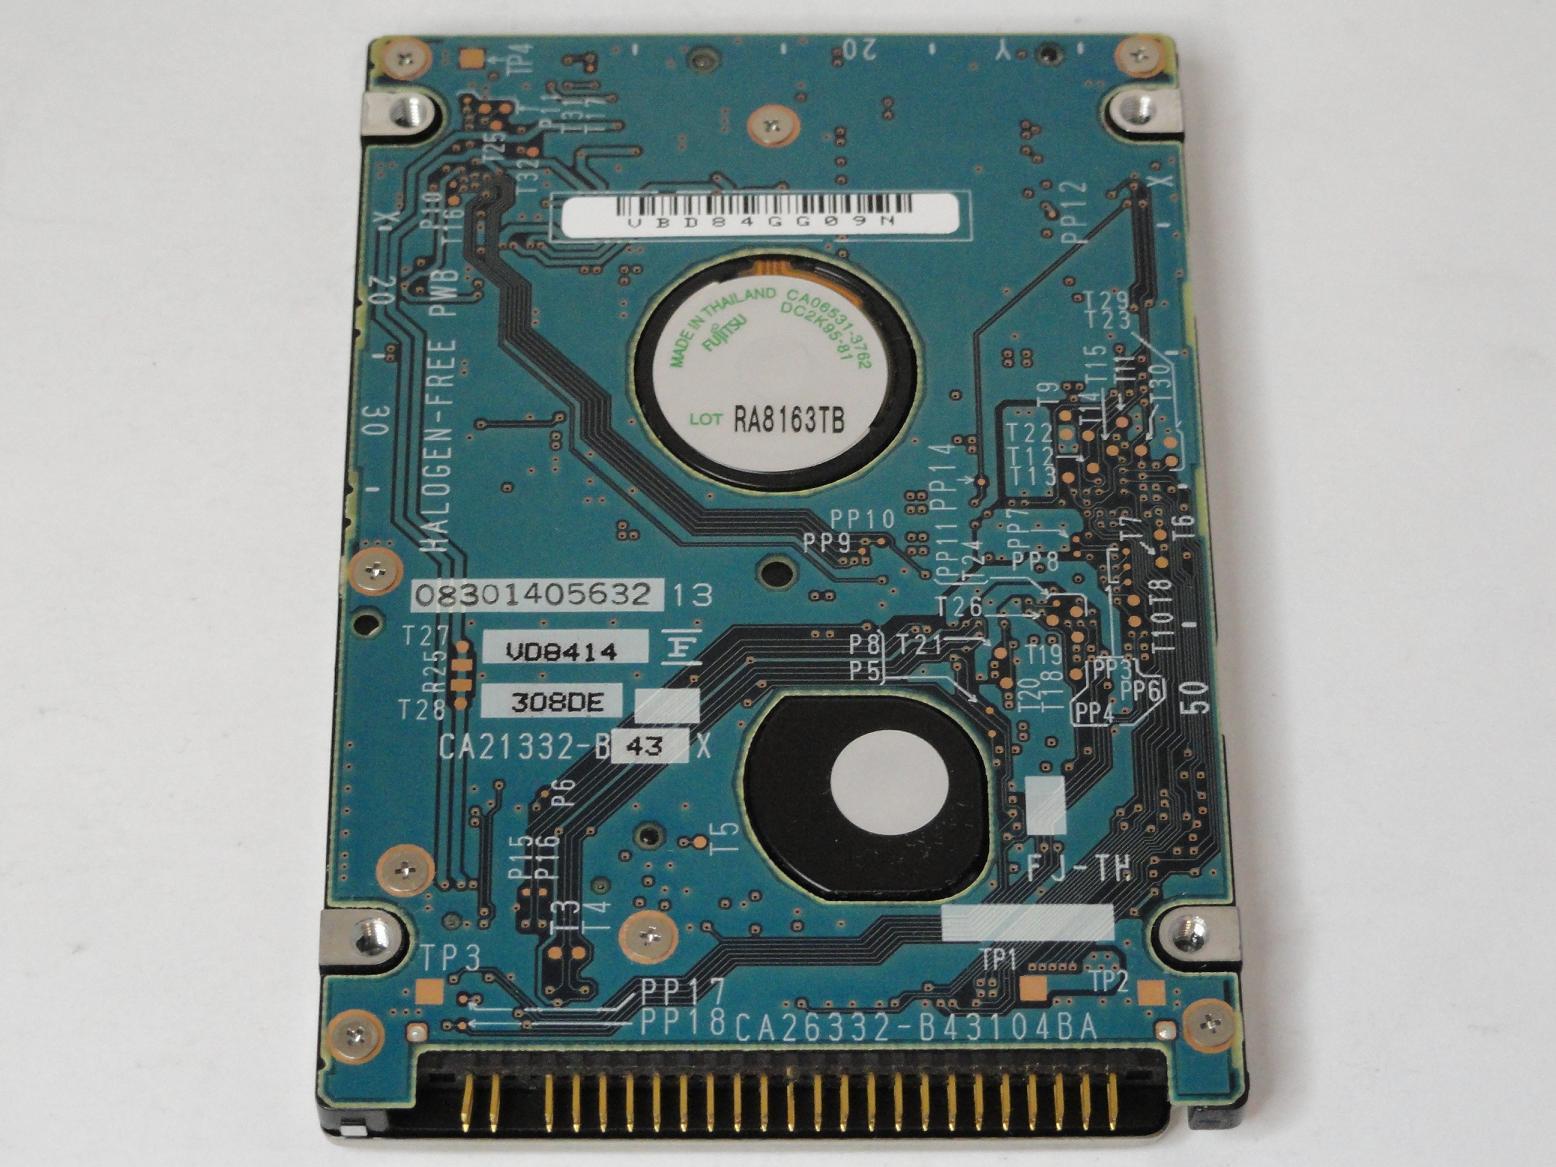 MC4297_CA06377-B11400DL_Fujitsu 40GB IDE 5400rpm 2.5in HDD - Image2